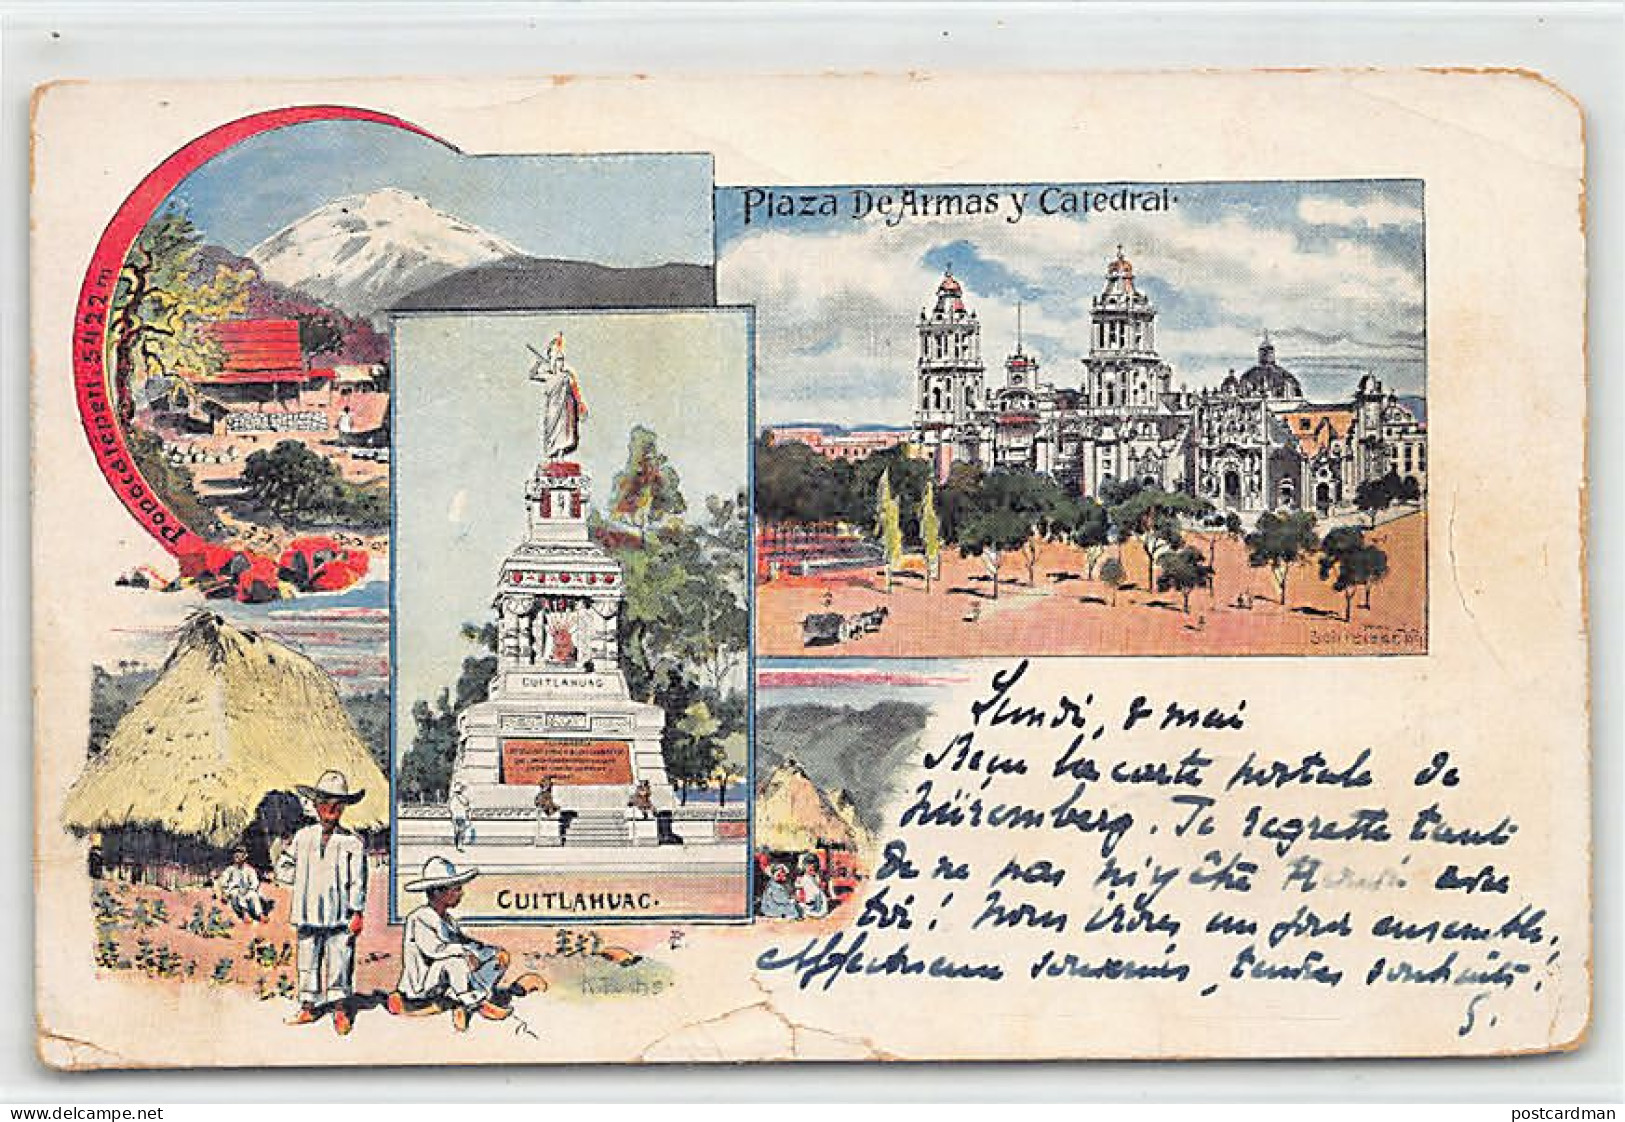 Ciudad De México - Plaza De Armas Y Catedral - Cuitláhuac - Popocatépetl - Año 1899 - LITHO Litografía - SEE SCANS FOR  - Mexico